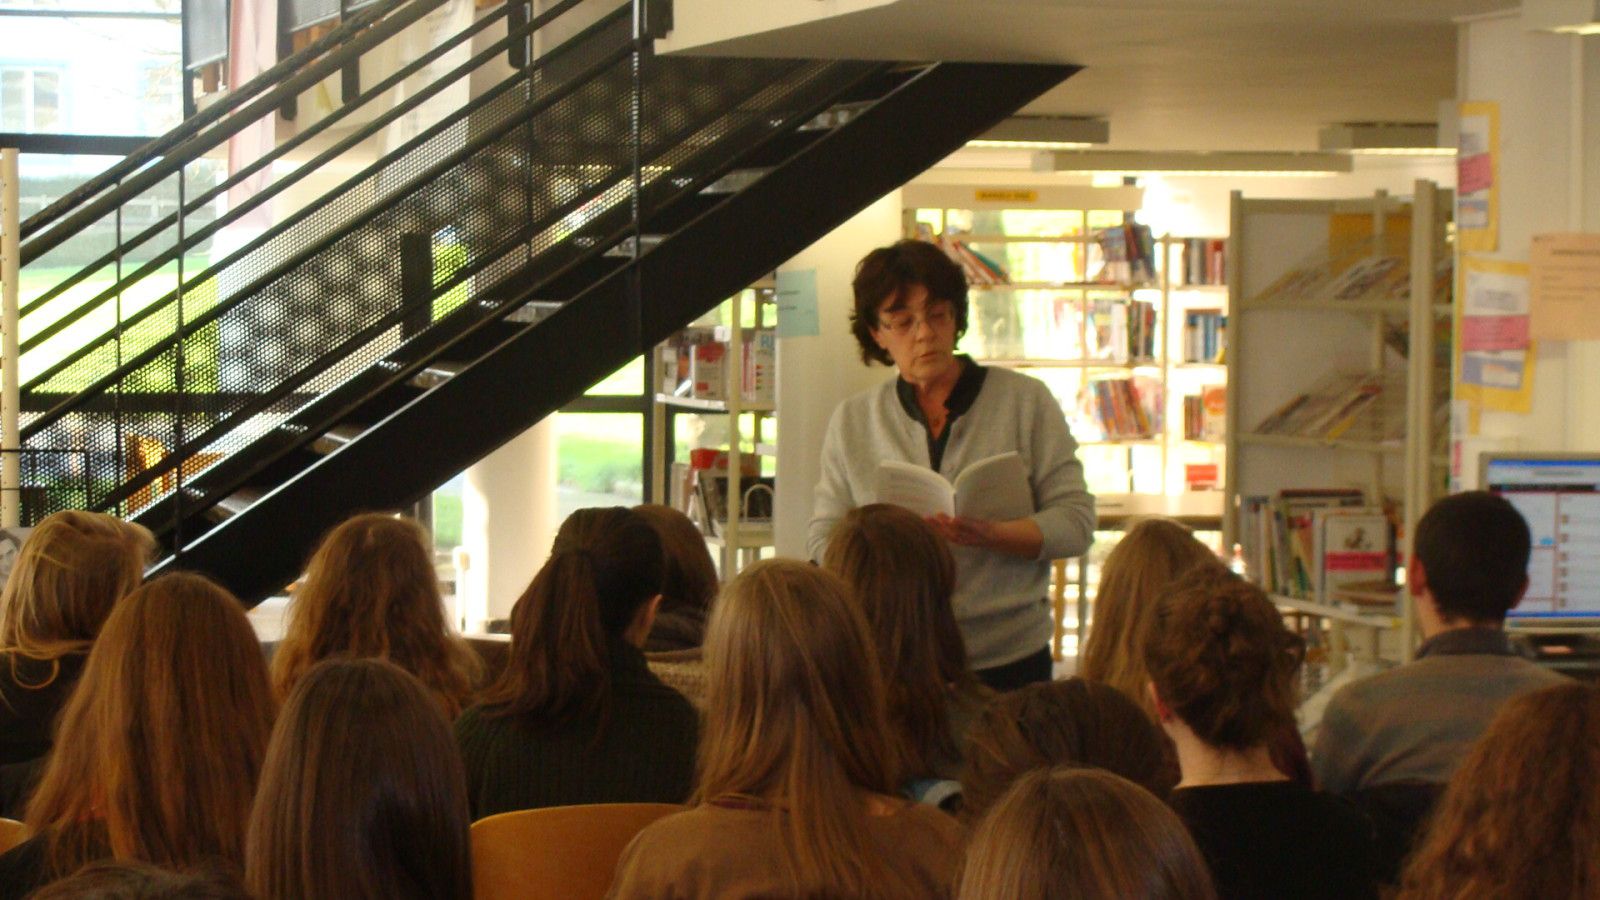 Jeudi 25 janvier 2013, au CDI du lycée de l'Iroise à Brest, les lycéens d'i-voix ont rencontré  Anne Jullien
auteure du recueil Flottilles.